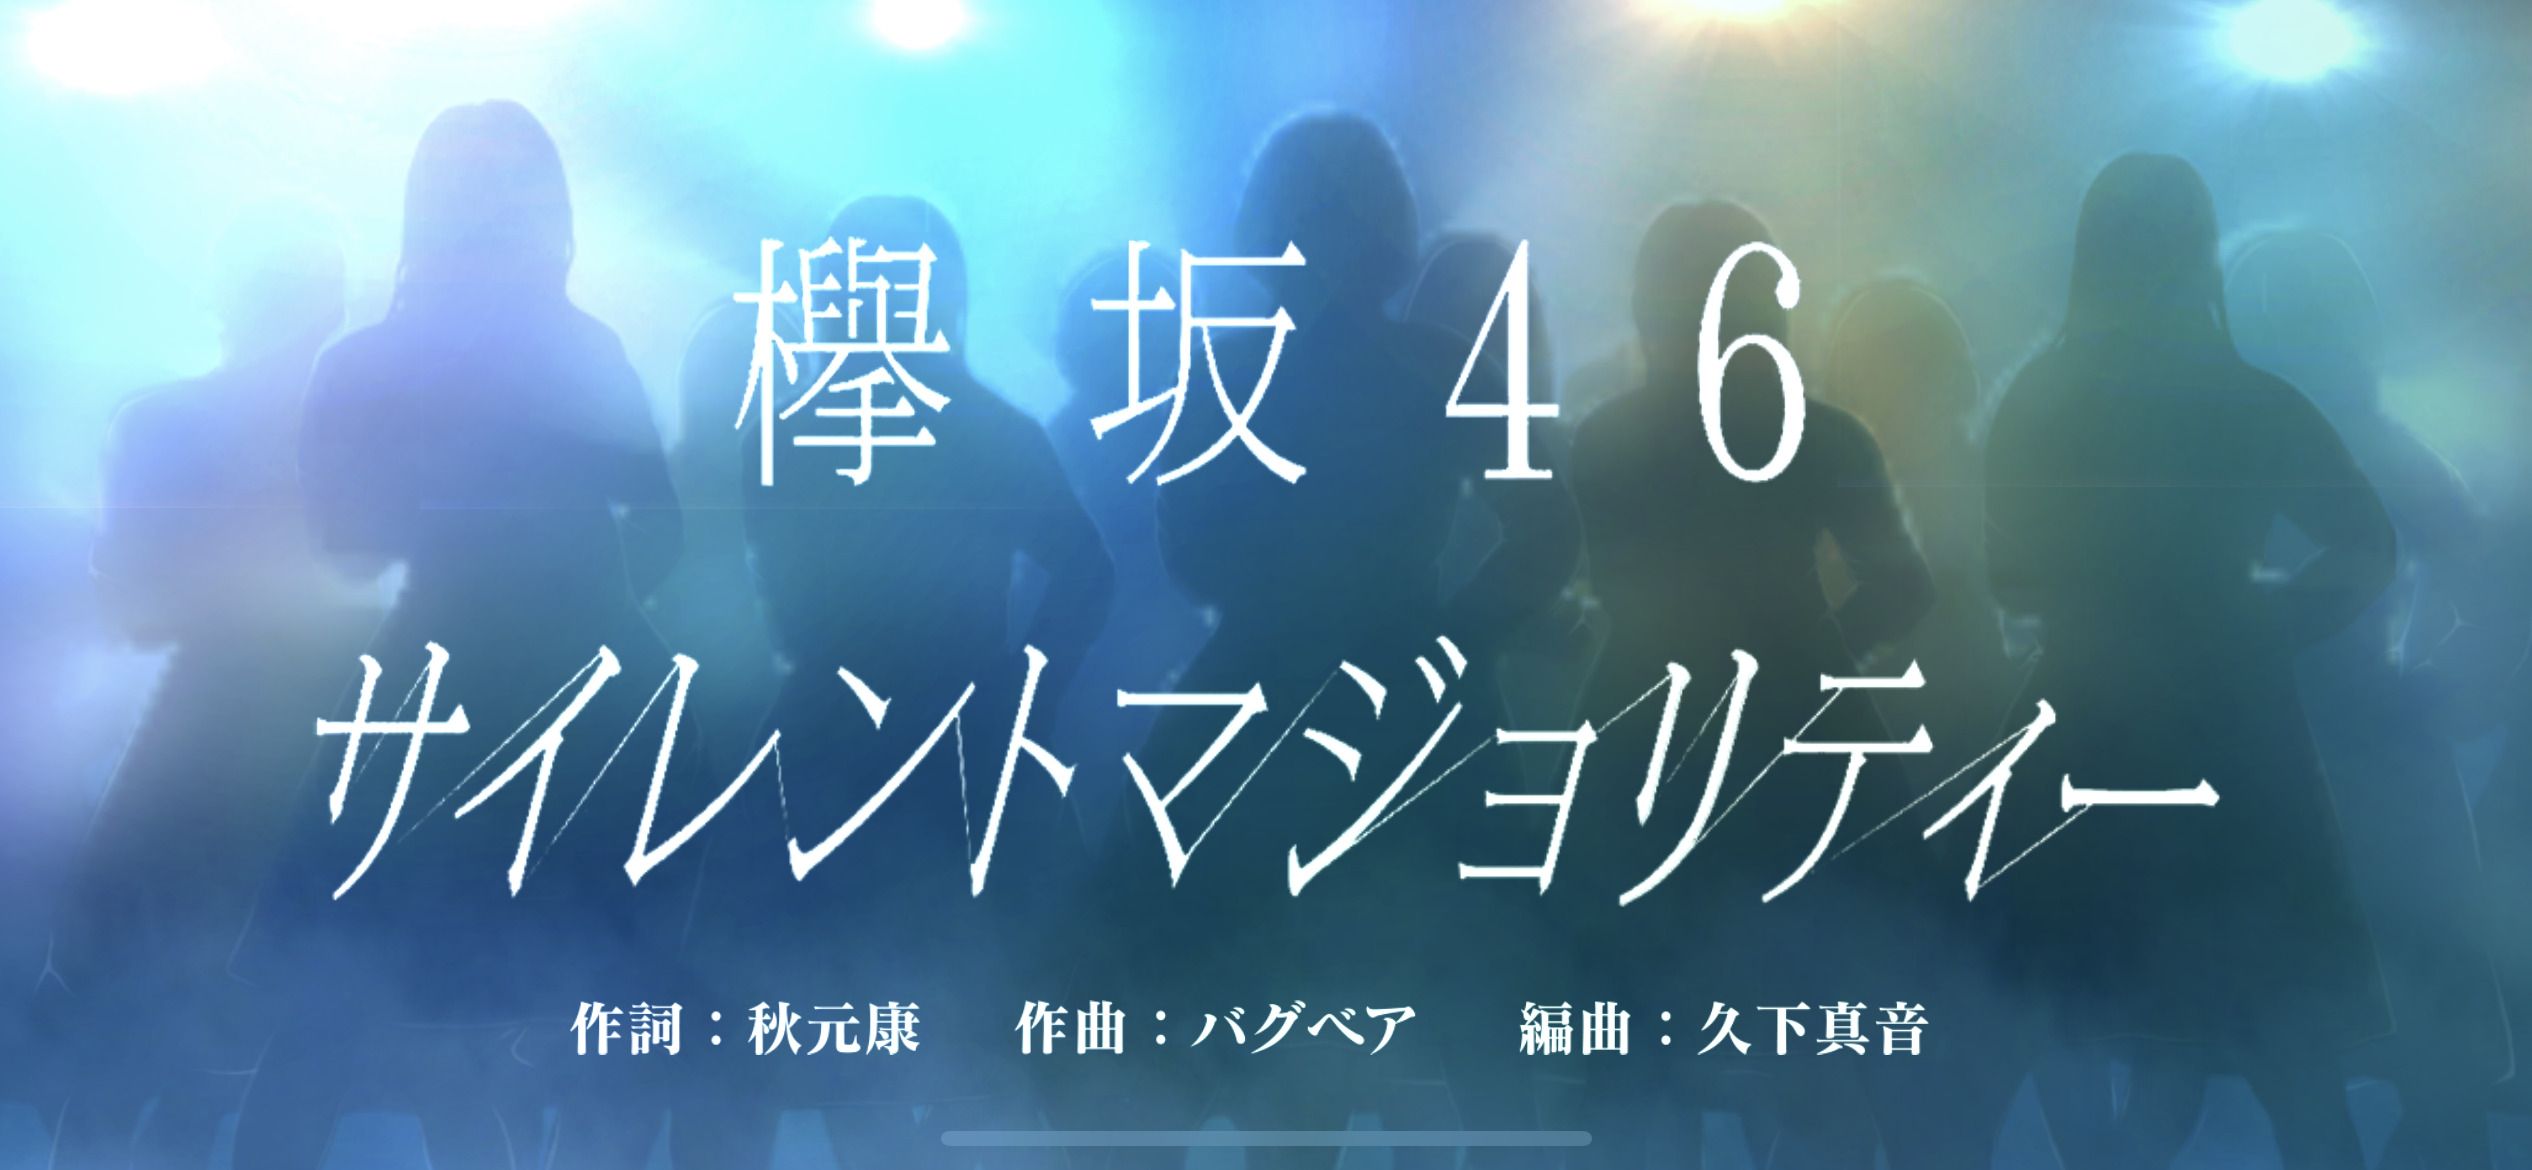 欅坂46 サイレントマジョリティー 直筆サイン色紙 アイドル 銀座買取